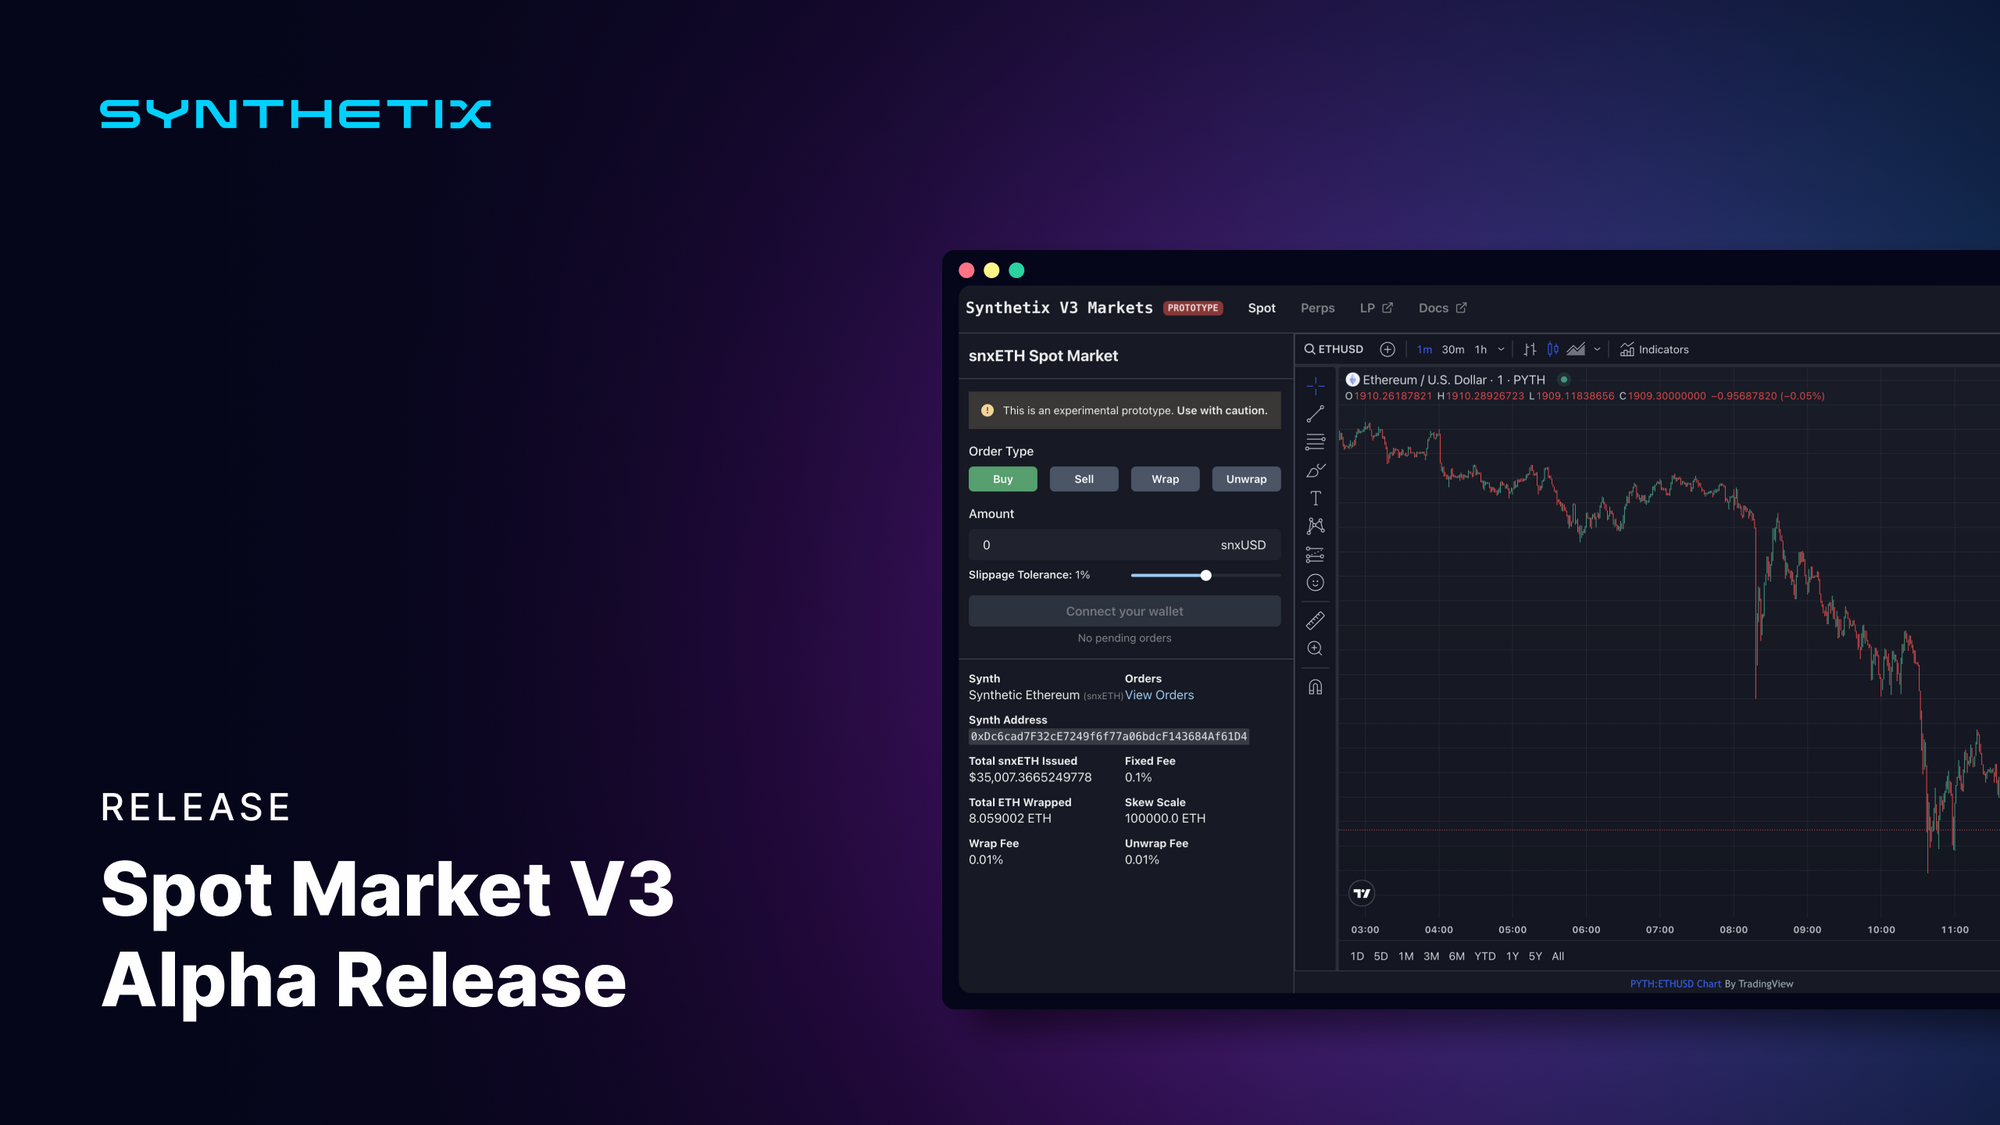 Spot Market V3 Alpha Release